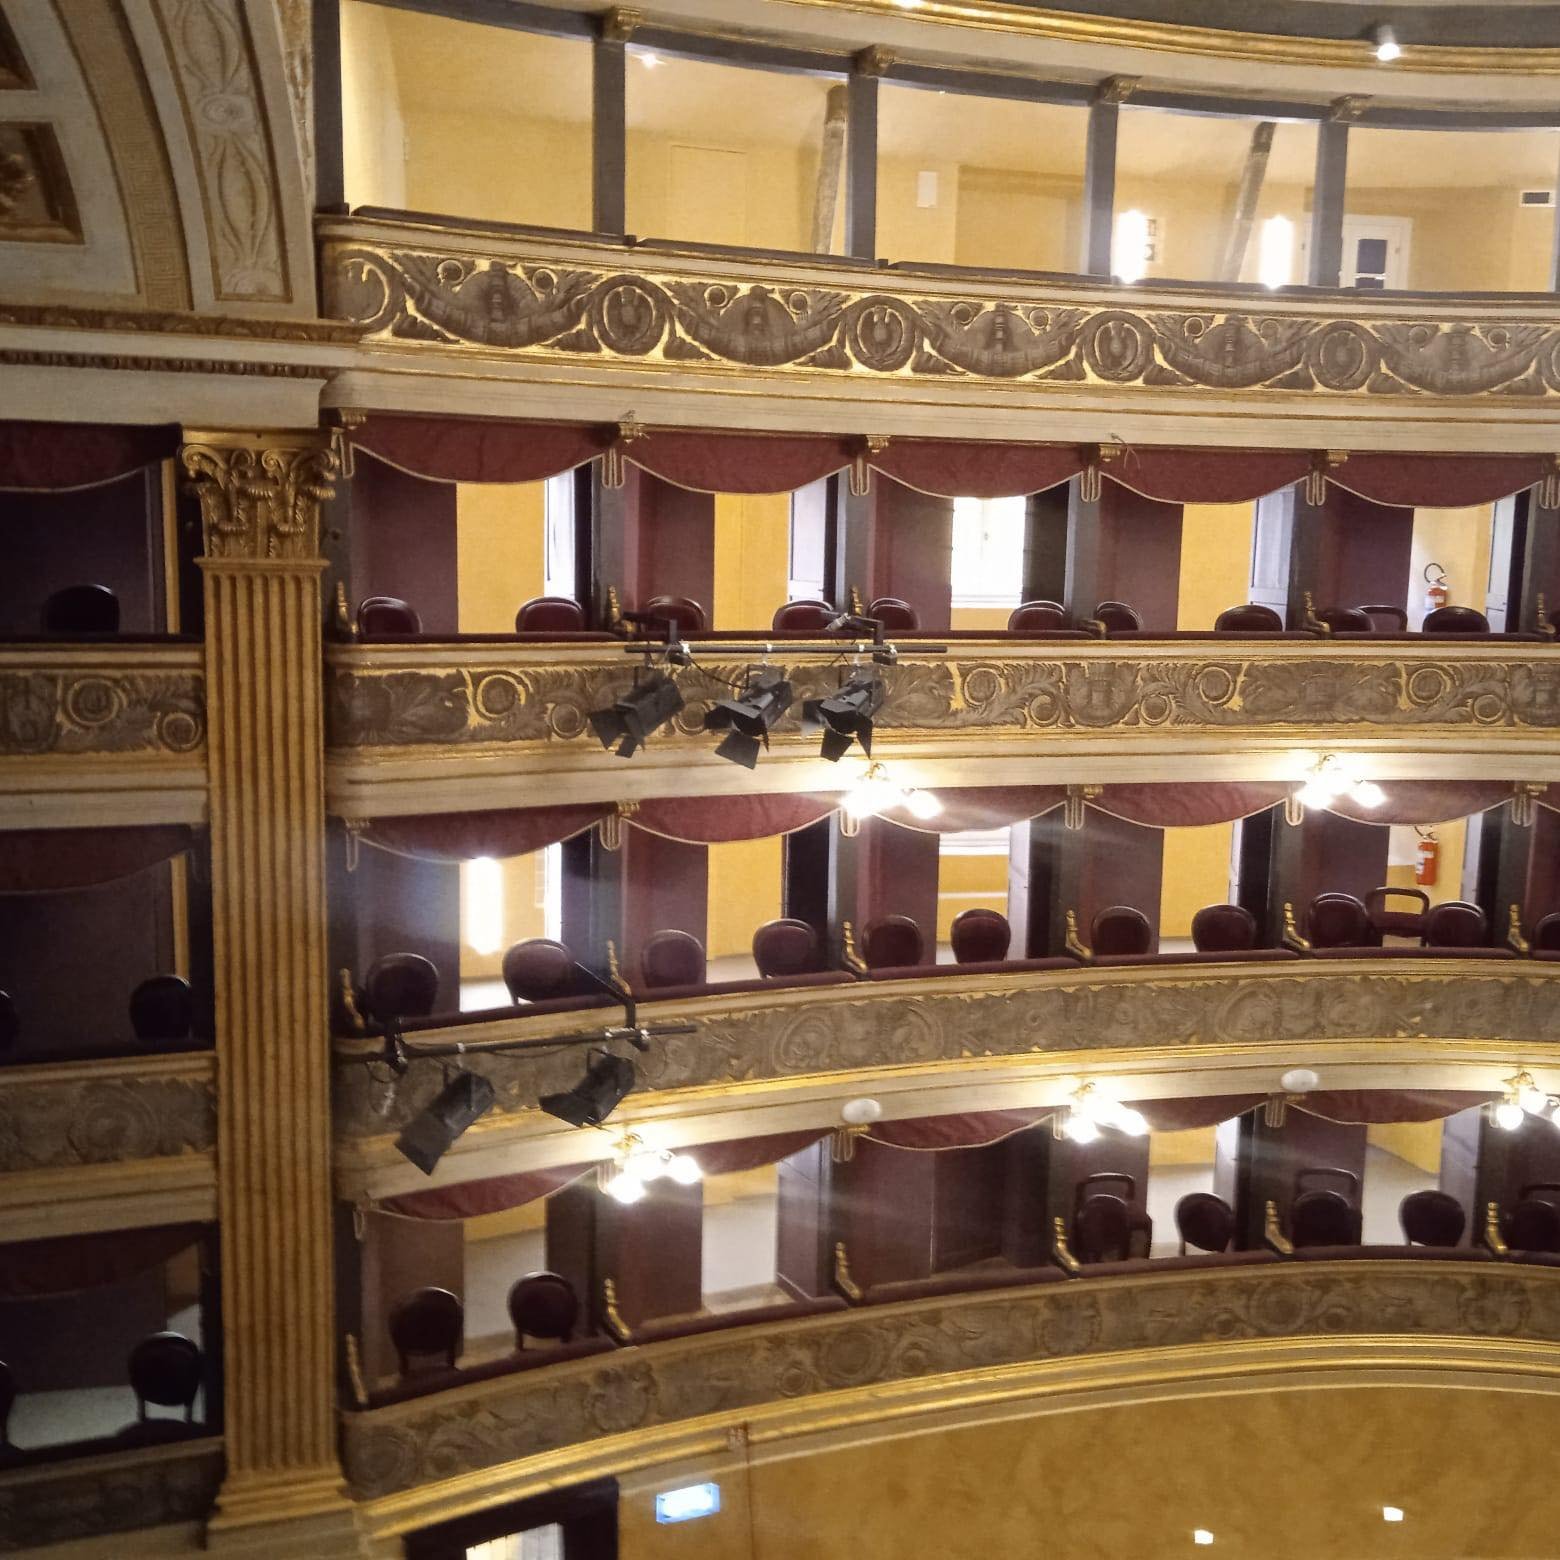 Riaperto il Teatro Marenco a Novi: le foto della serata dell’inaugurazione [FOTO]